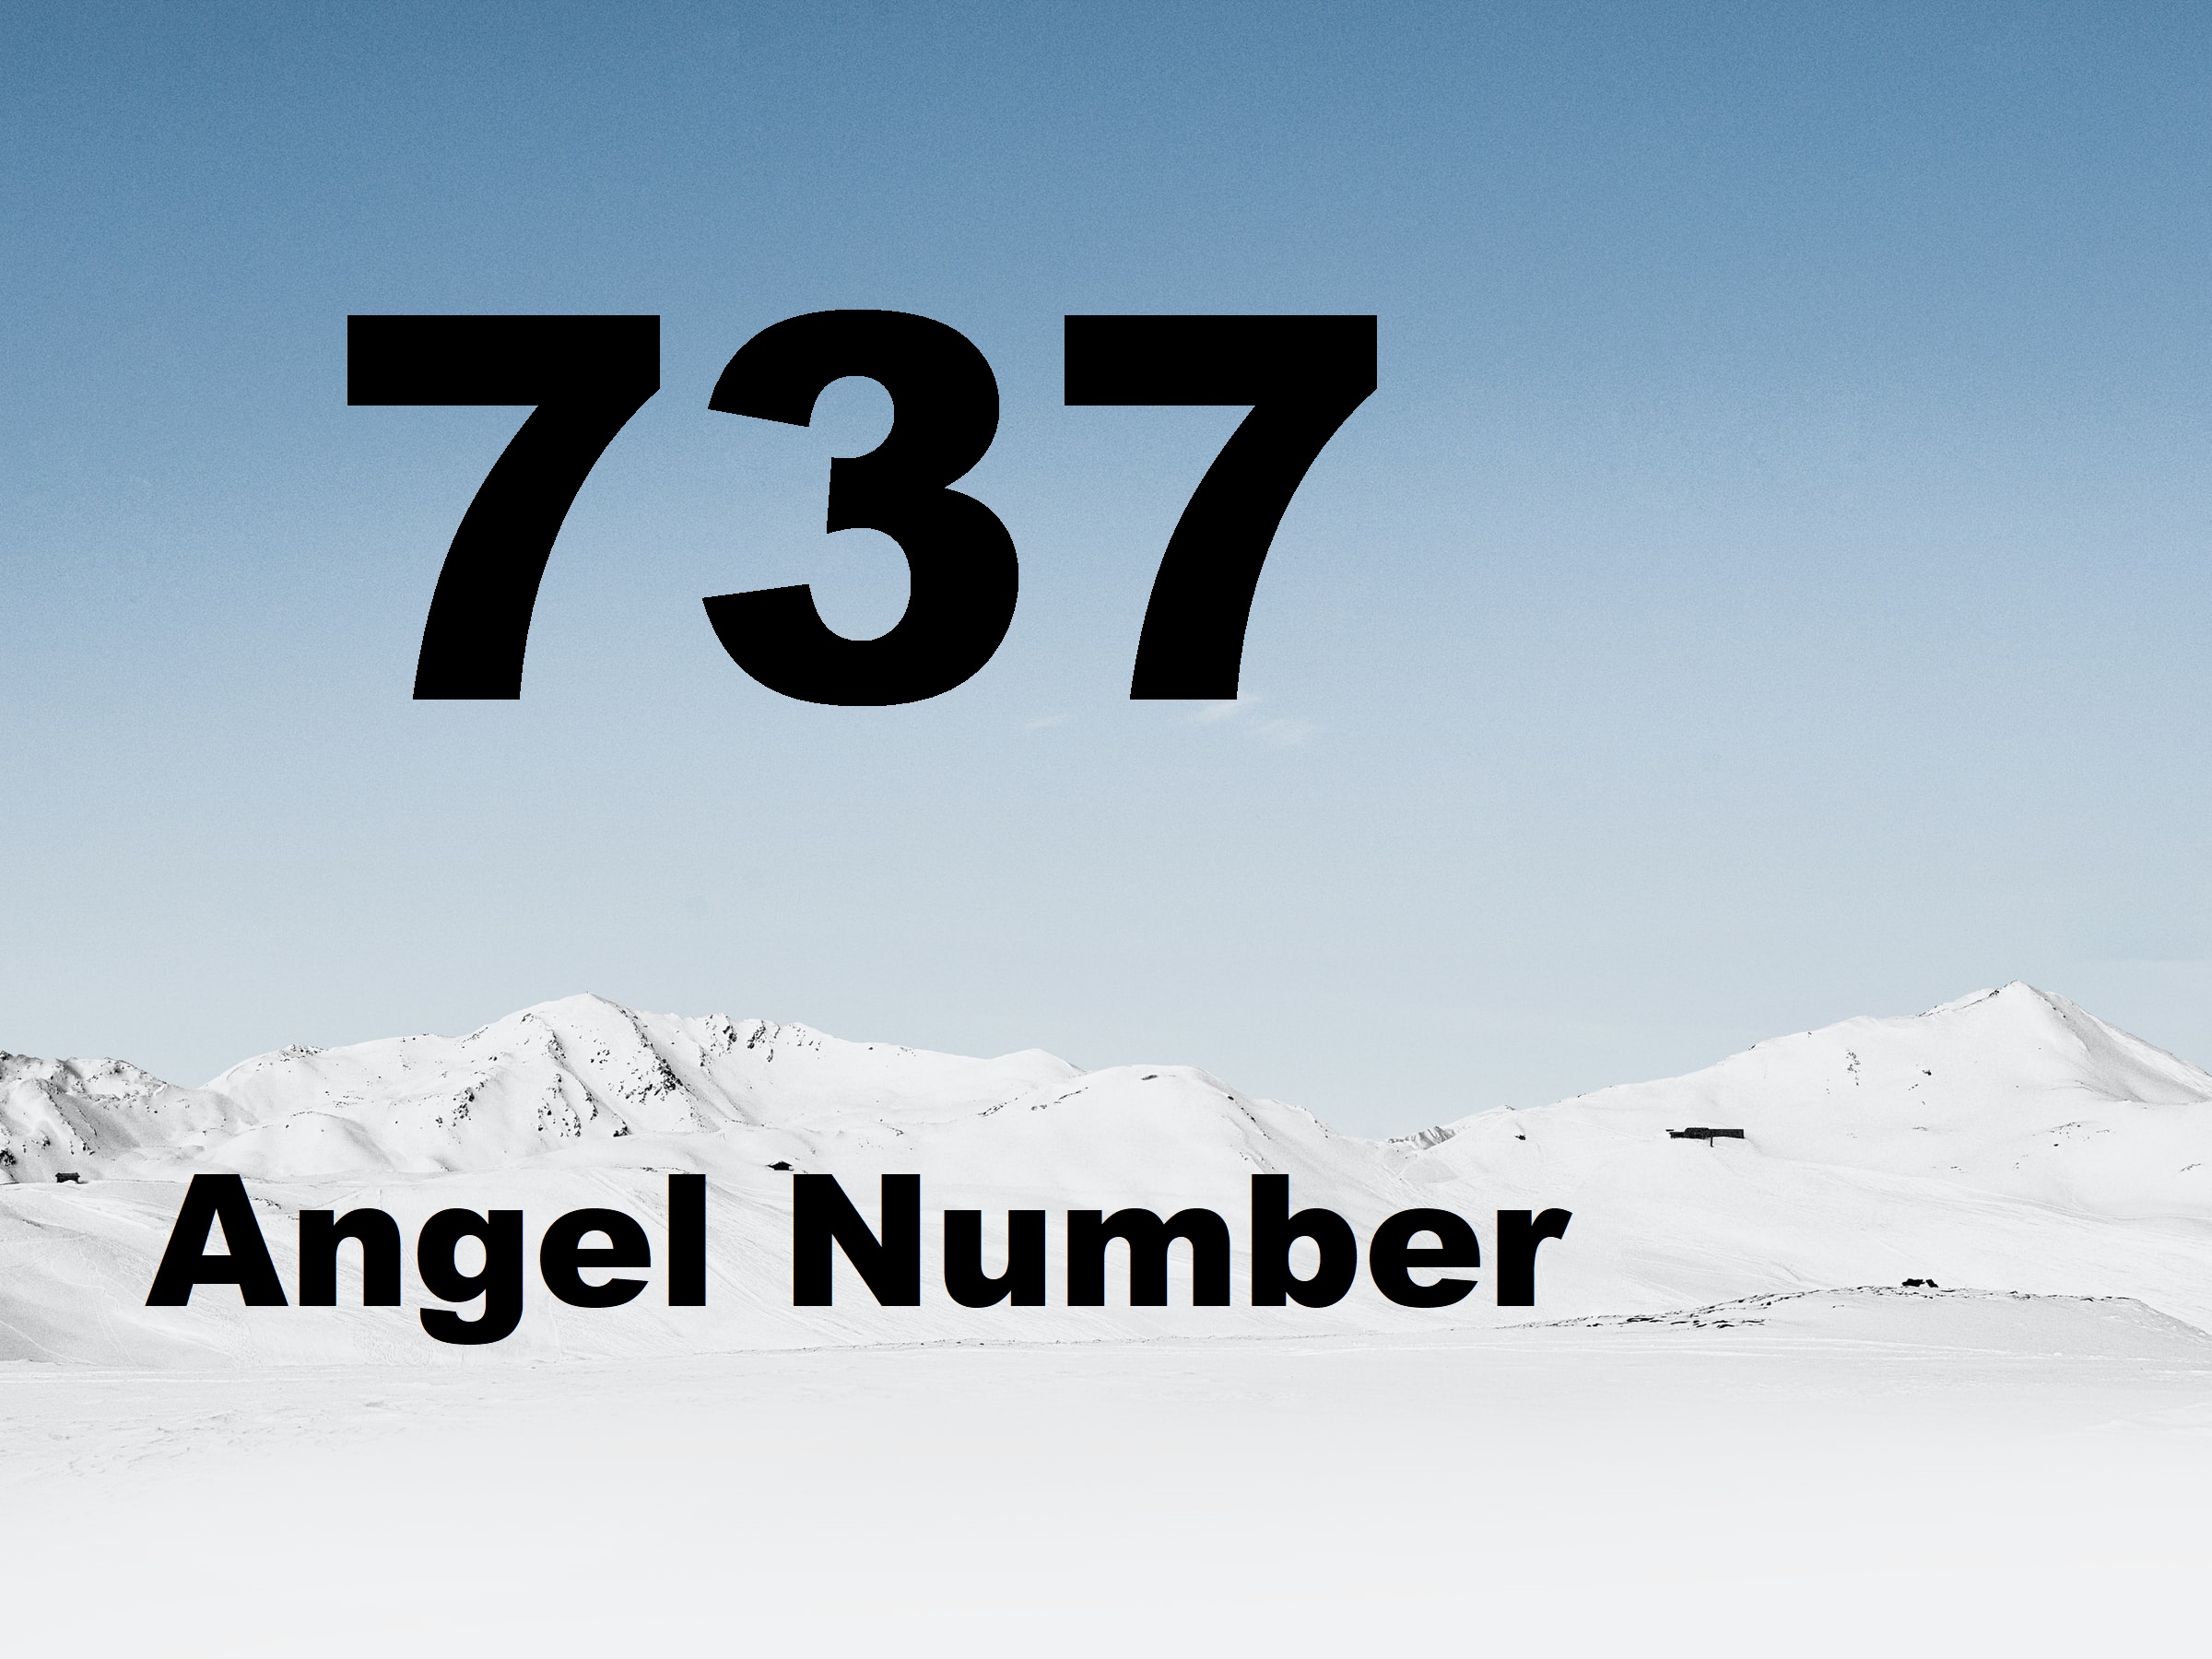 737 Angel Number - Indicates Abundance And Pure Feminine Energy